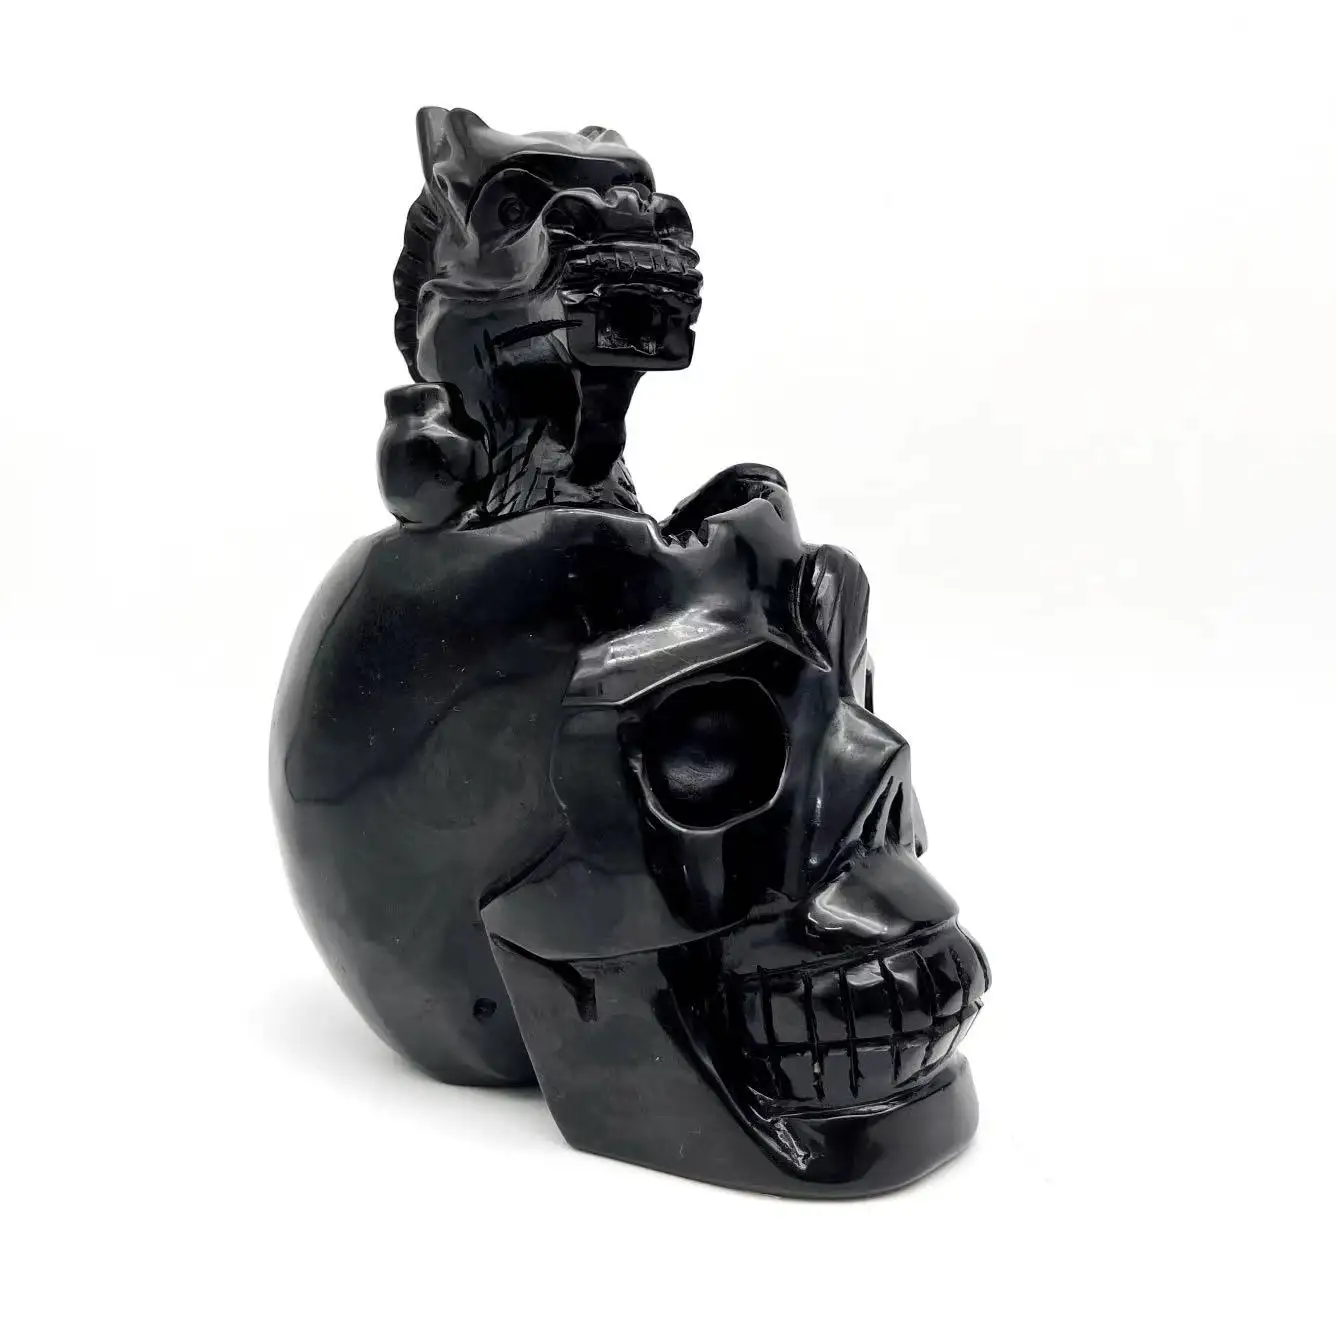 Hot Selling Natural Hand Carved Wonderful Black Obsidian Dragon Skulls King Crystal Crafts